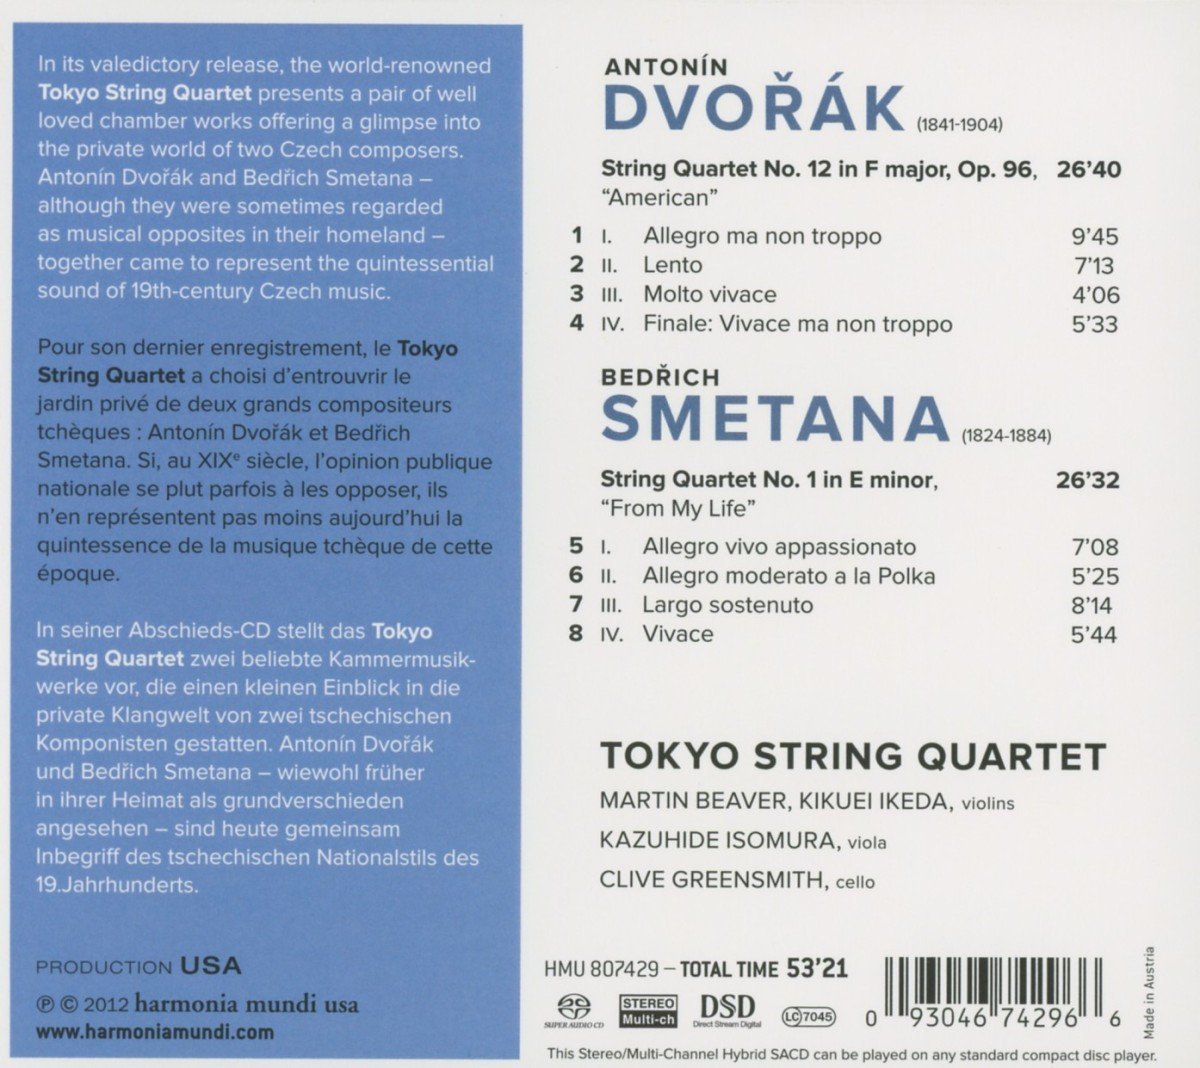 Tokyo String Quartet new releases Dvorak and Smetana's String Quartet